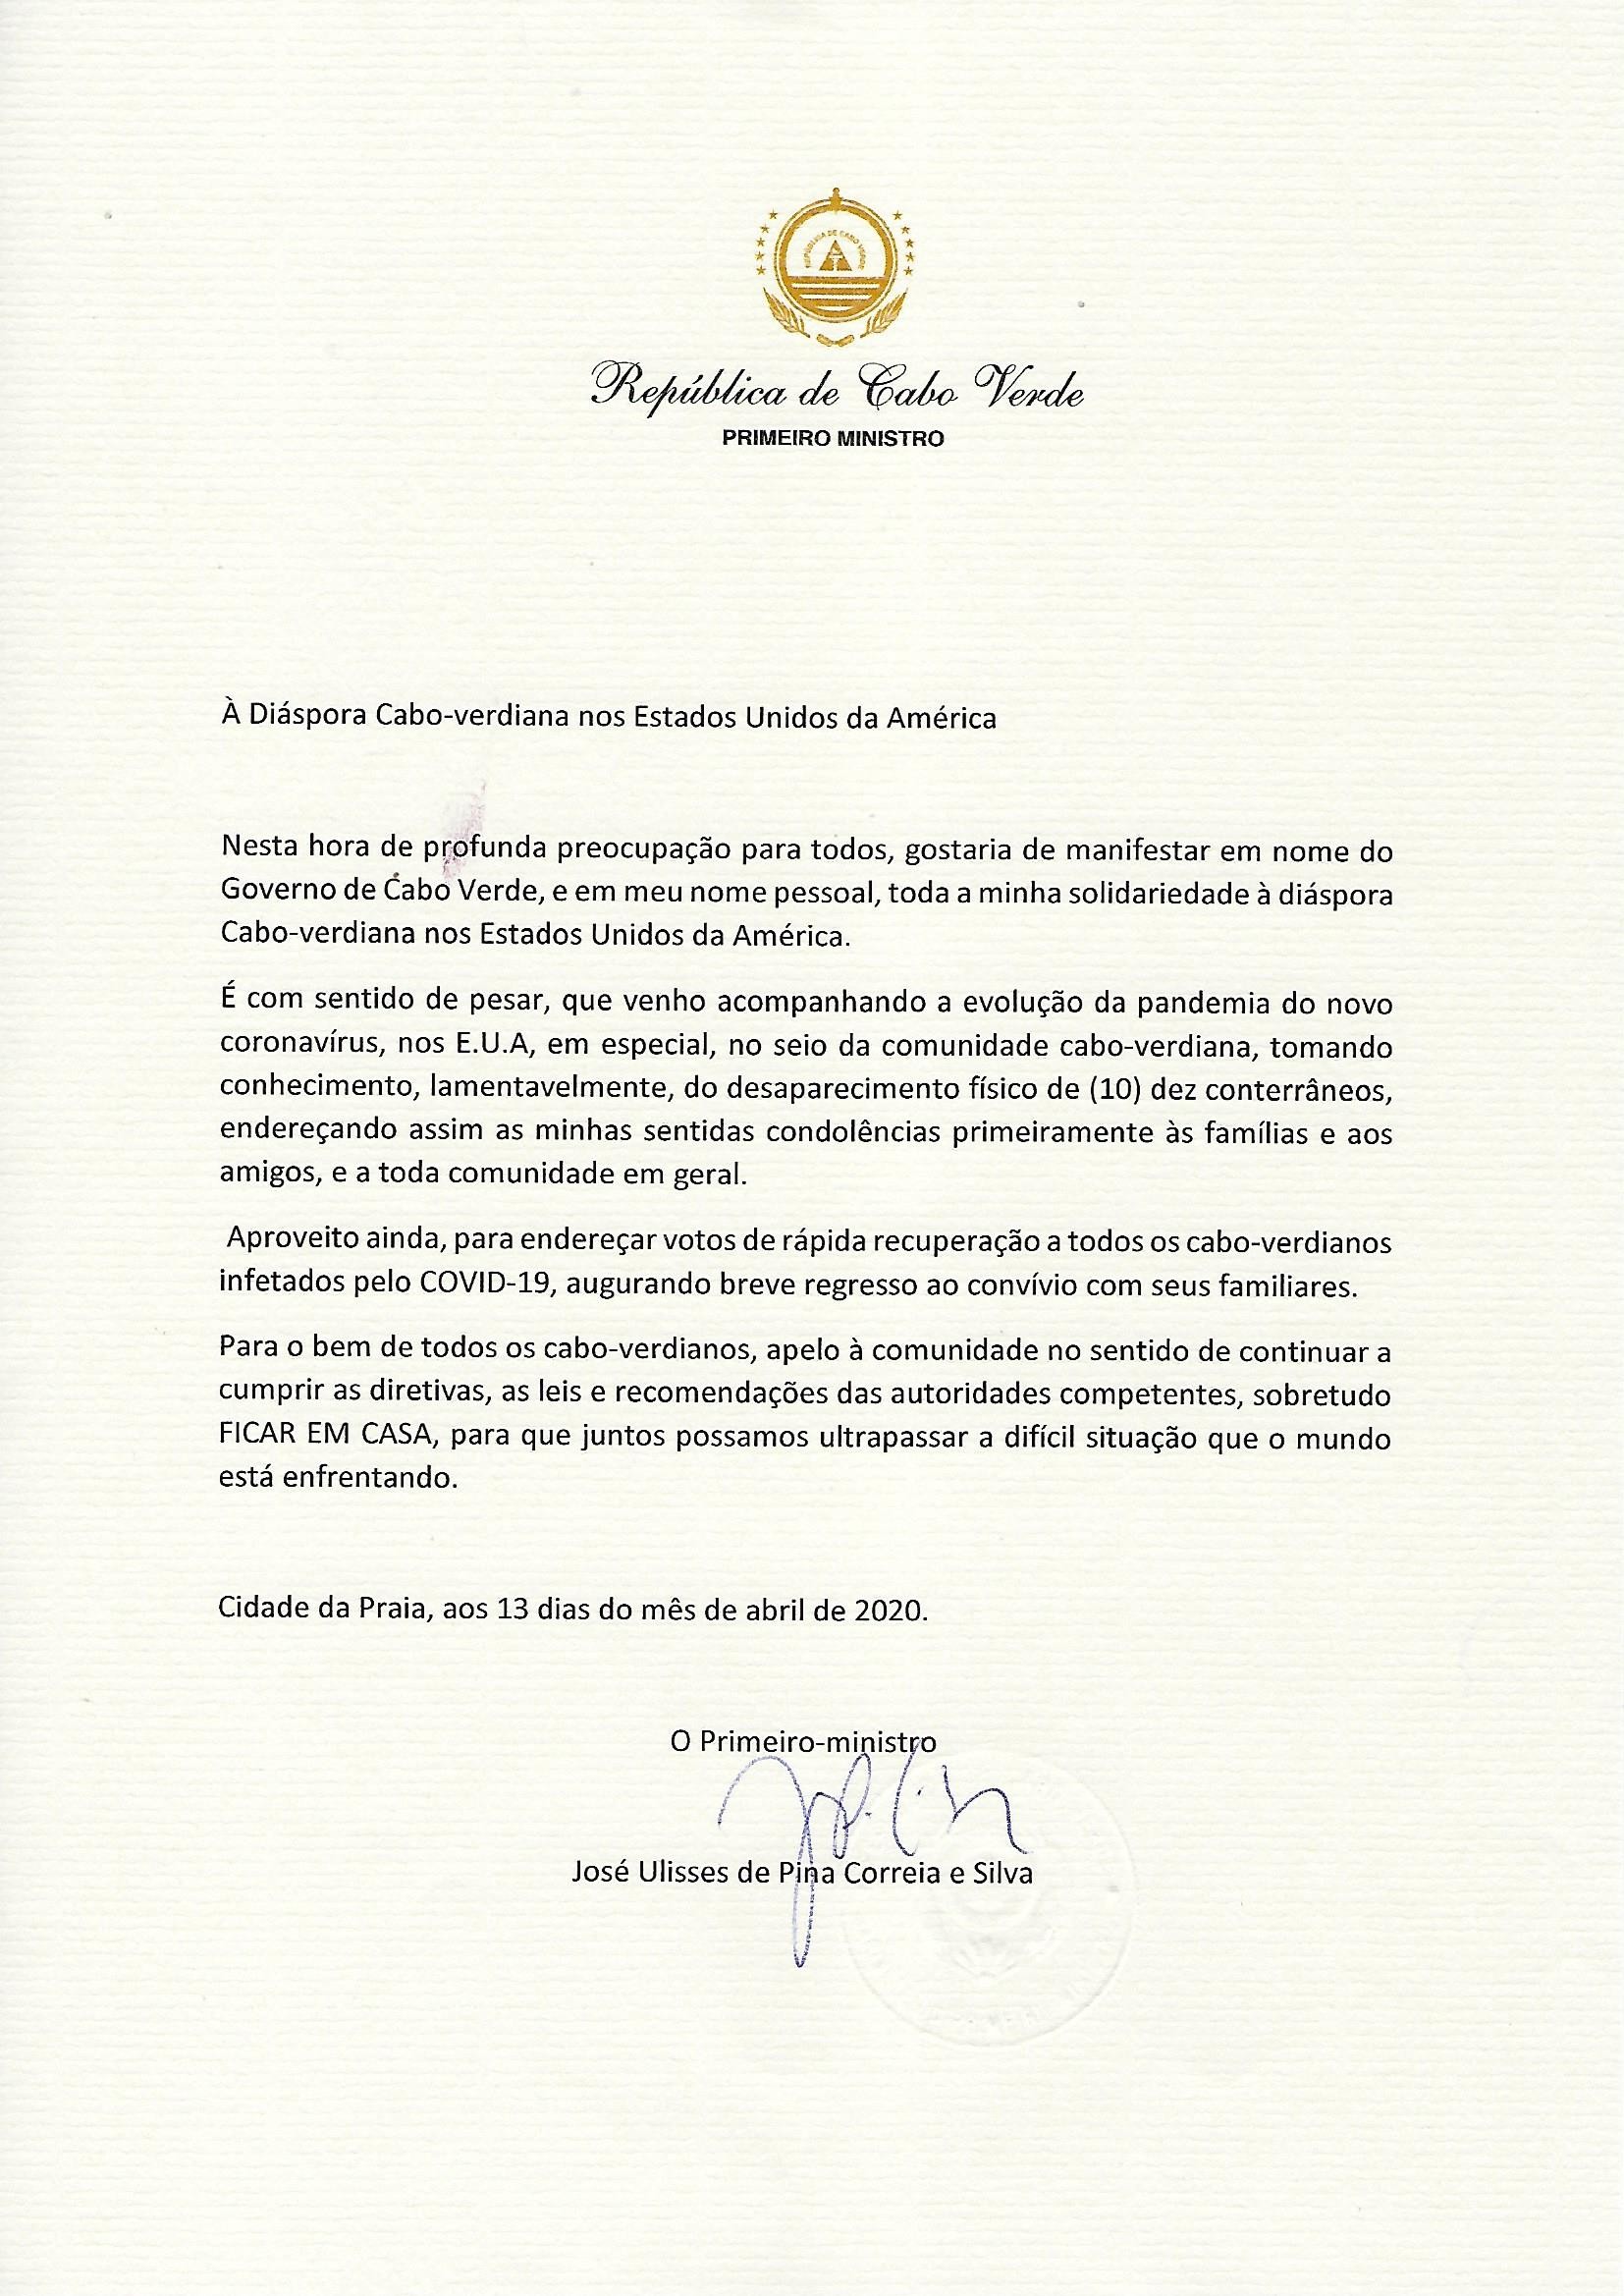 Carta Primeiro Ministro Diáspora Cabo verdiana USA